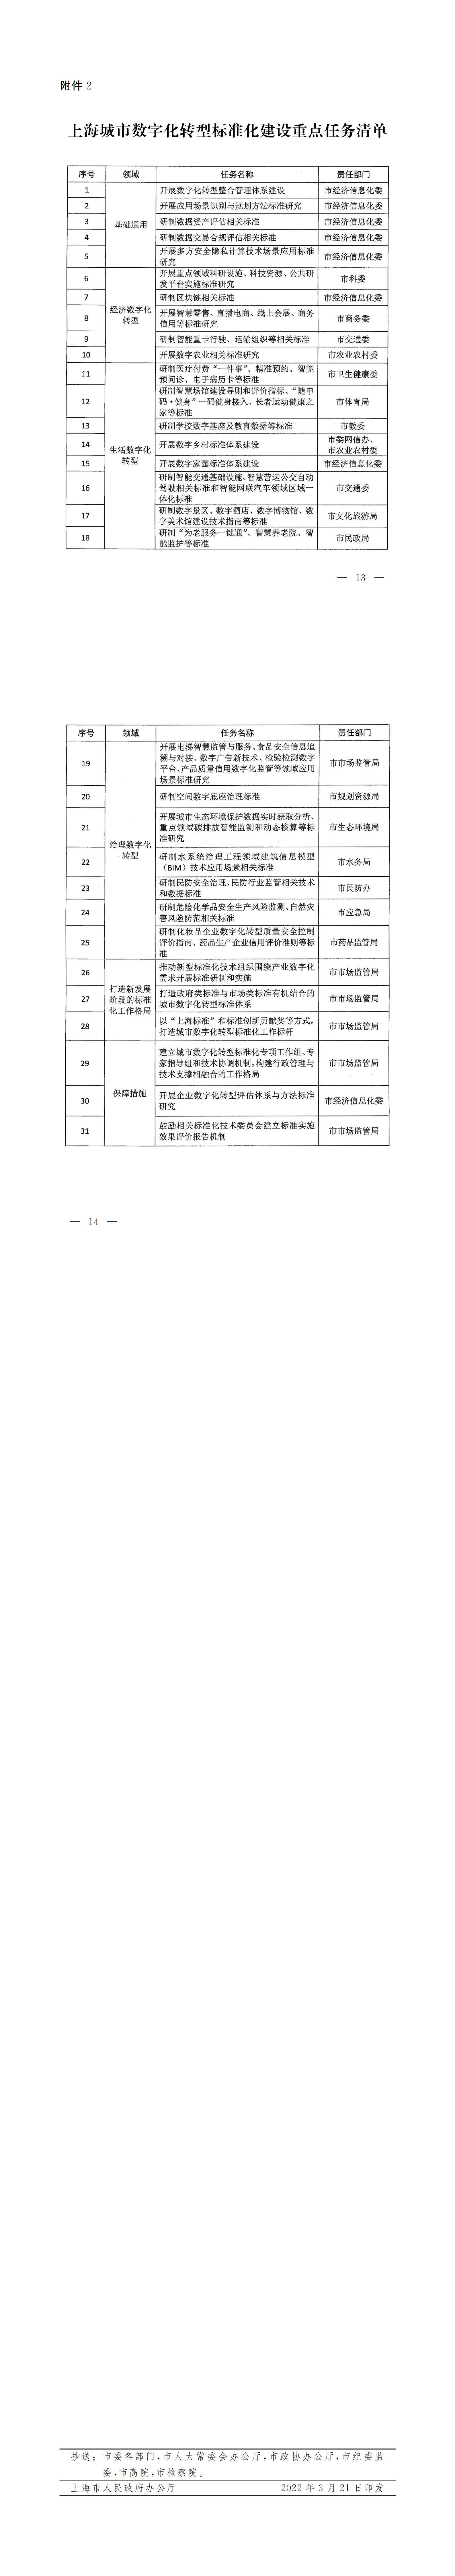 上海市人民政府办公厅关于印发《上海城市数字化转型标准化建设实施方案》的通知_01.jpg